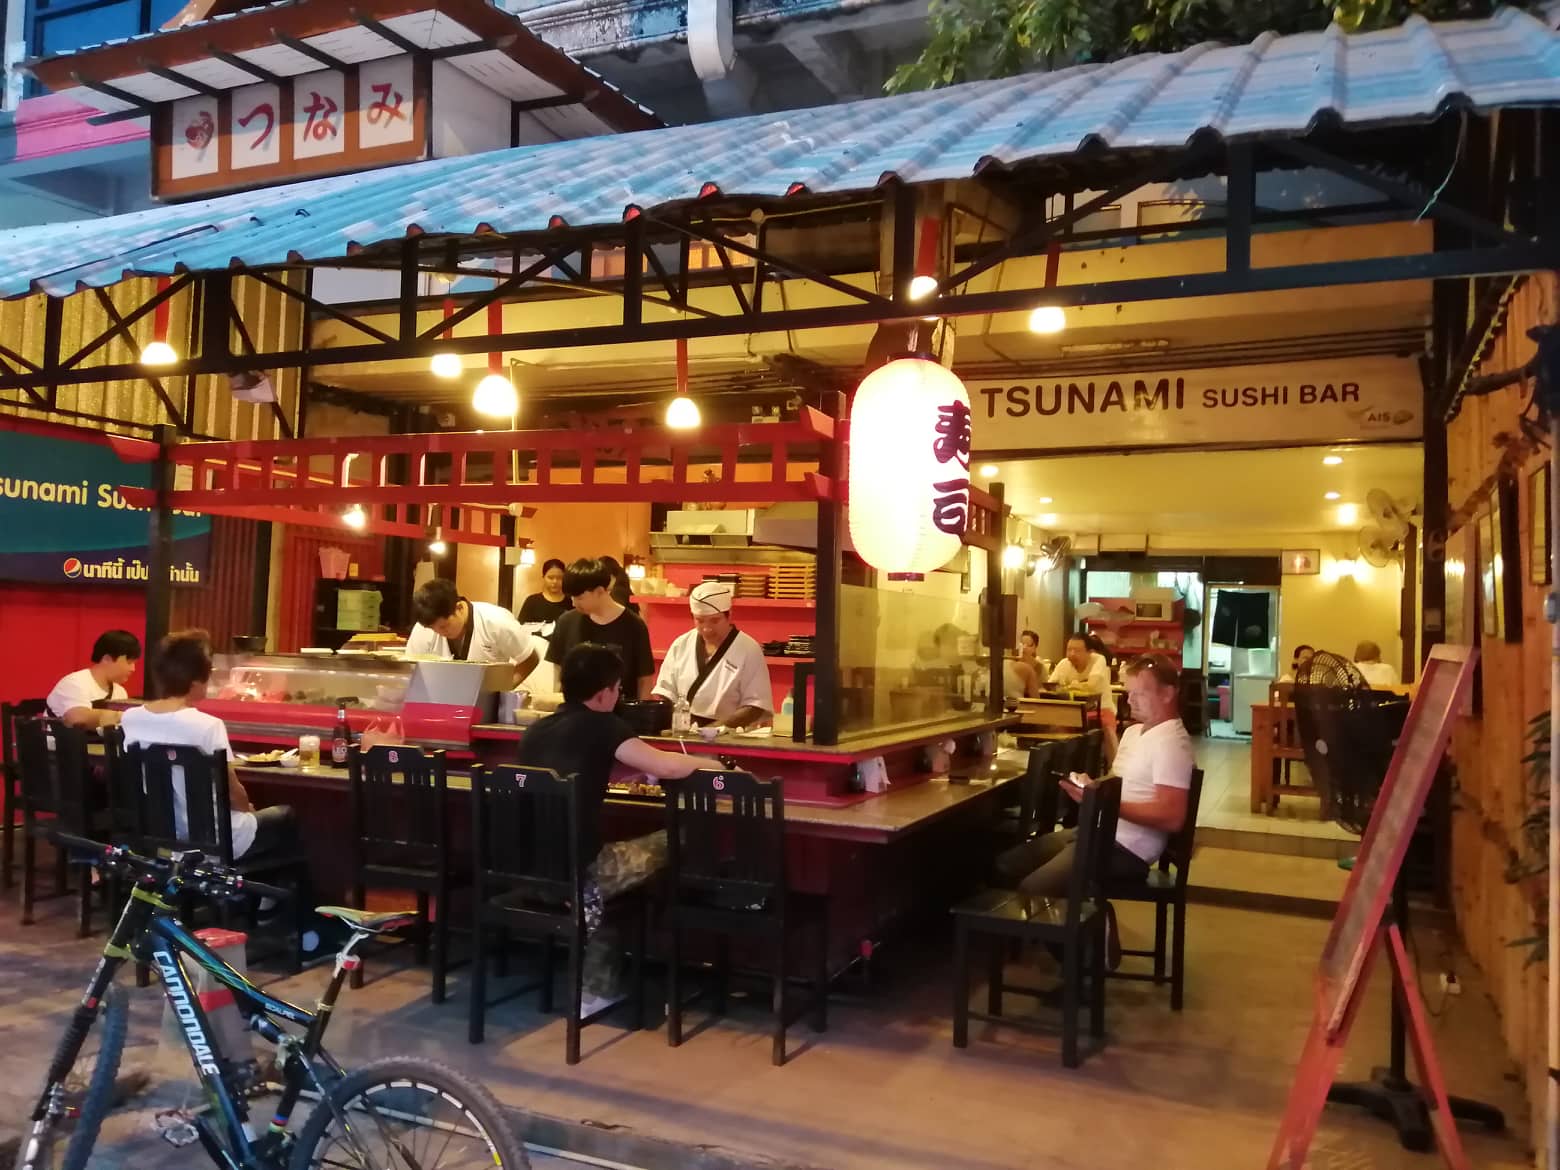 Tsunami Sushi Bar Restaurant In Chiang Mai Cheapish Fast Neat